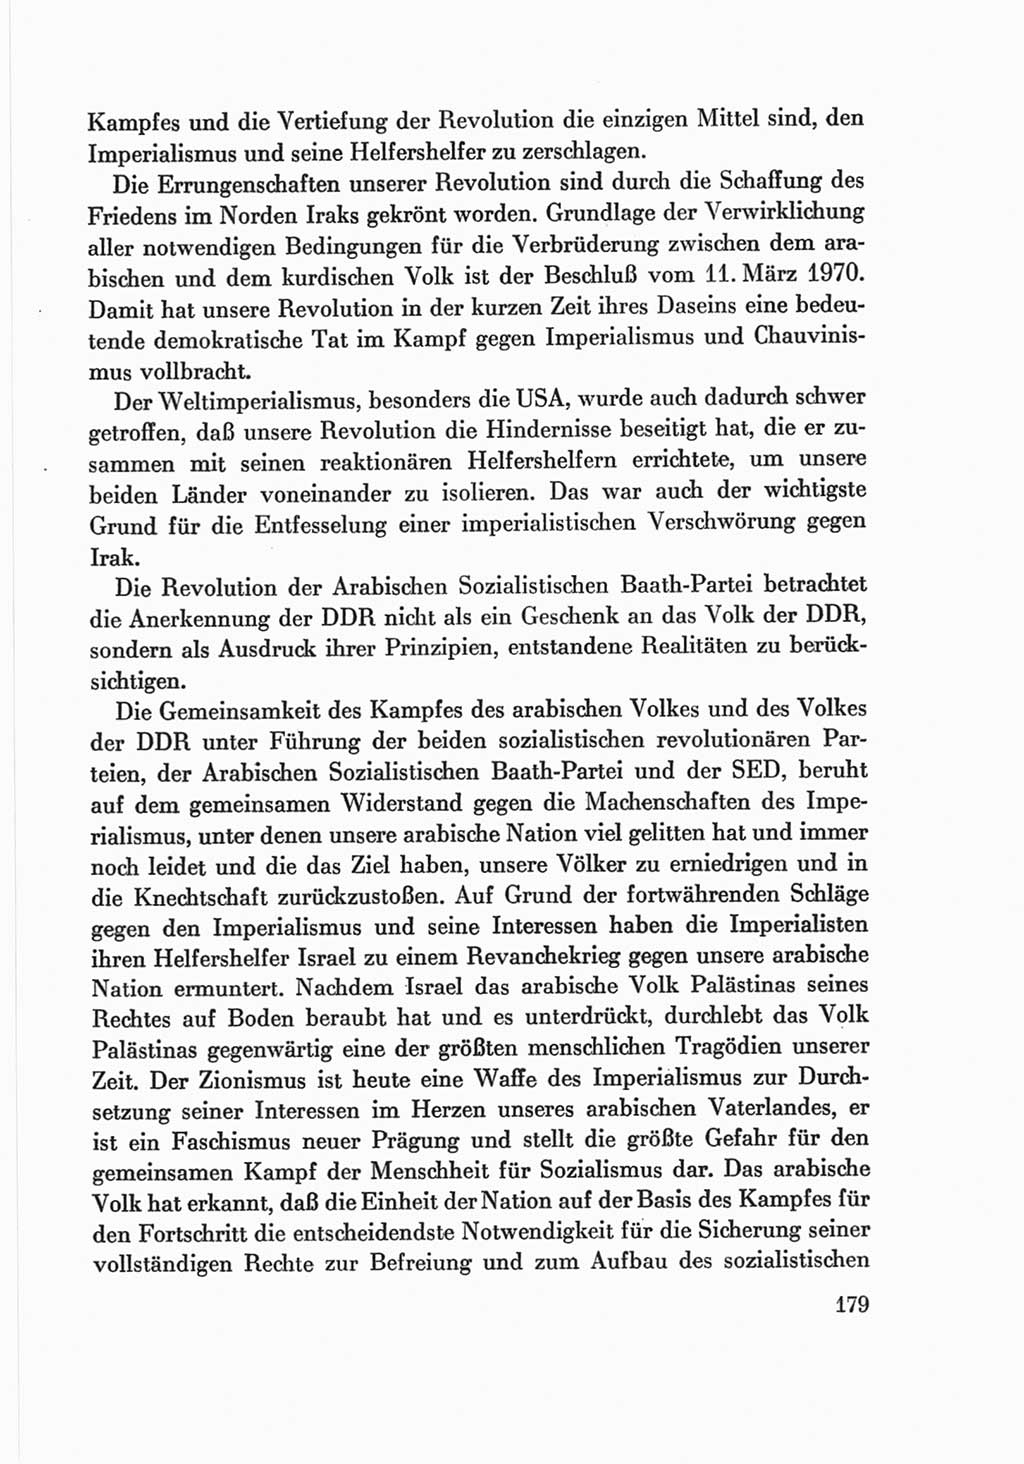 Protokoll der Verhandlungen des Ⅷ. Parteitages der Sozialistischen Einheitspartei Deutschlands (SED) [Deutsche Demokratische Republik (DDR)] 1971, Band 2, Seite 179 (Prot. Verh. Ⅷ. PT SED DDR 1971, Bd. 2, S. 179)